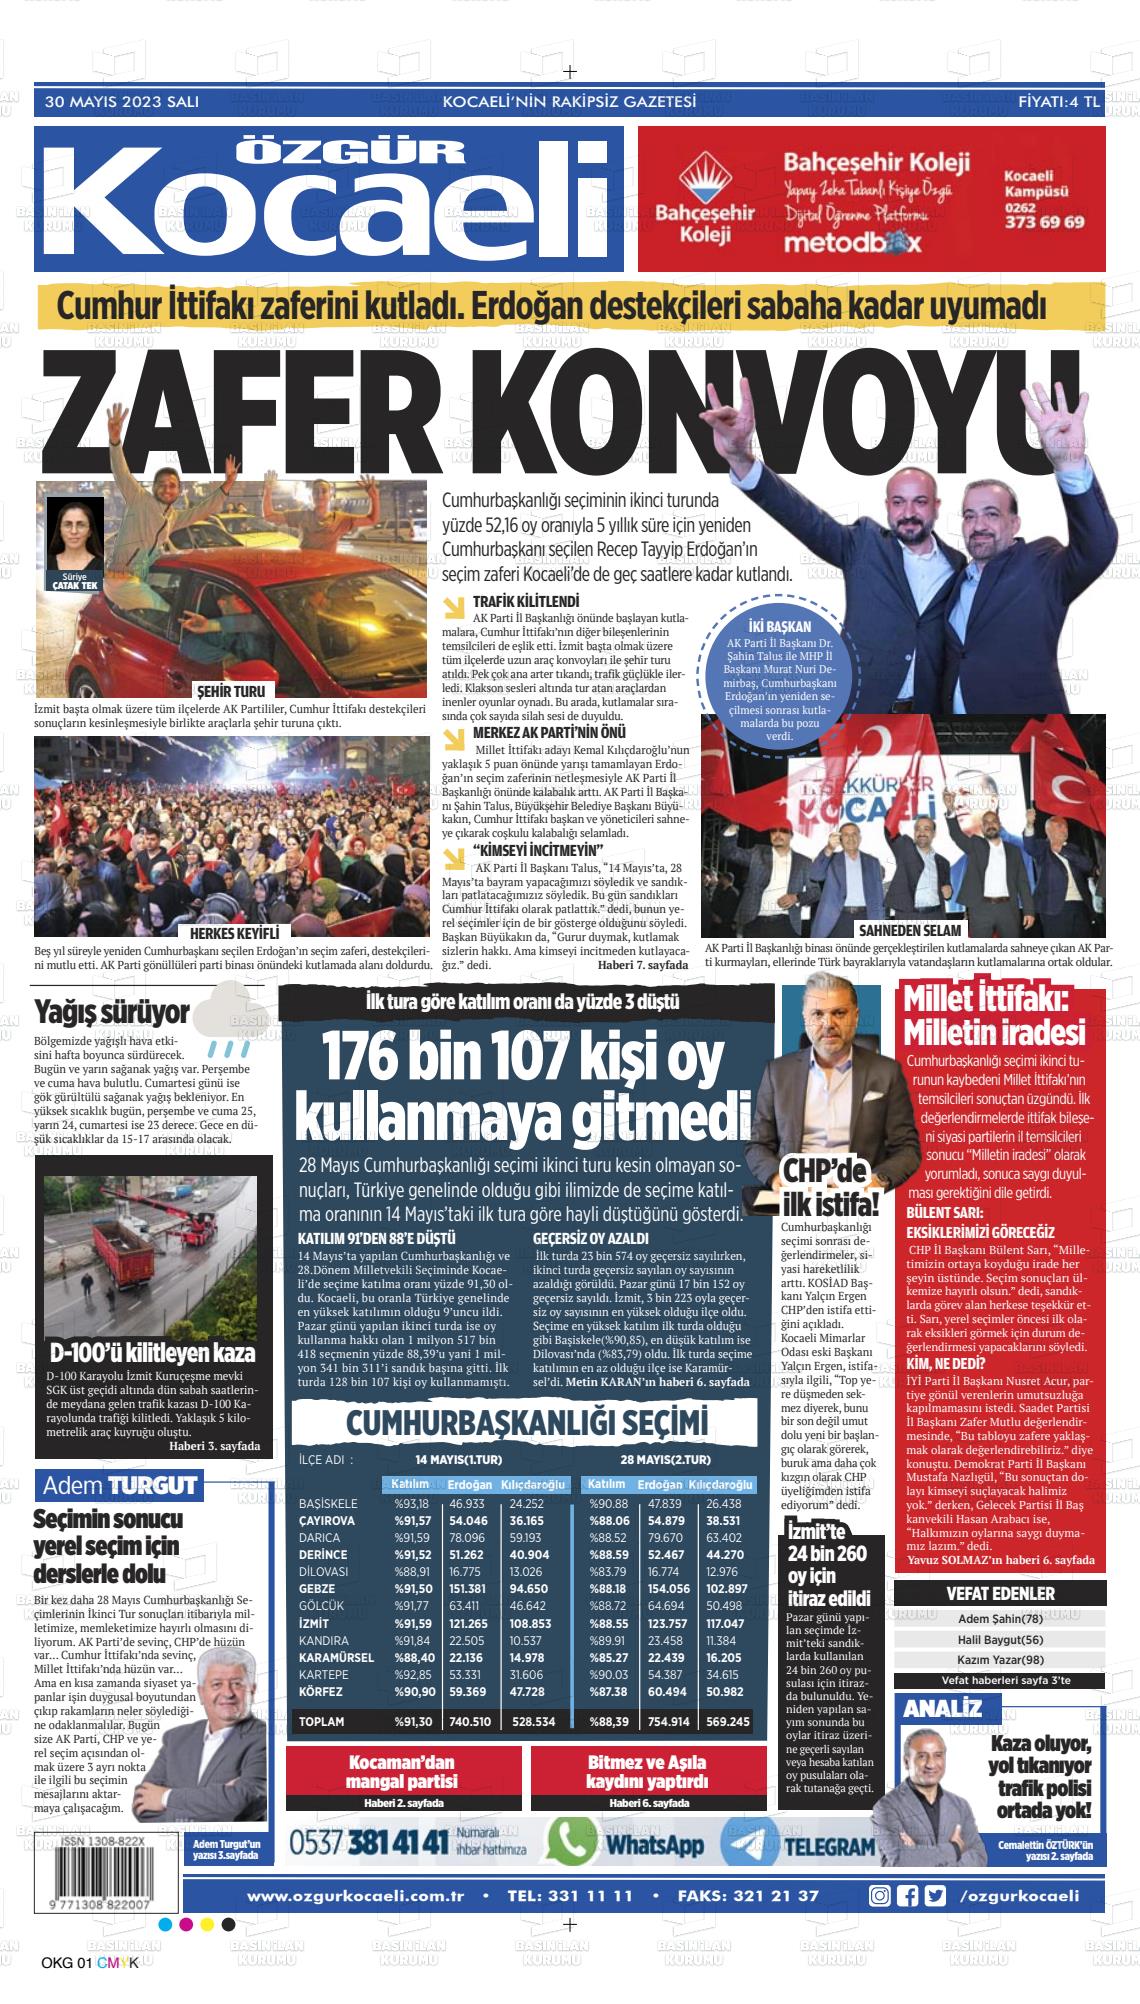 30 Mayıs 2023 Özgür Kocaeli Gazete Manşeti